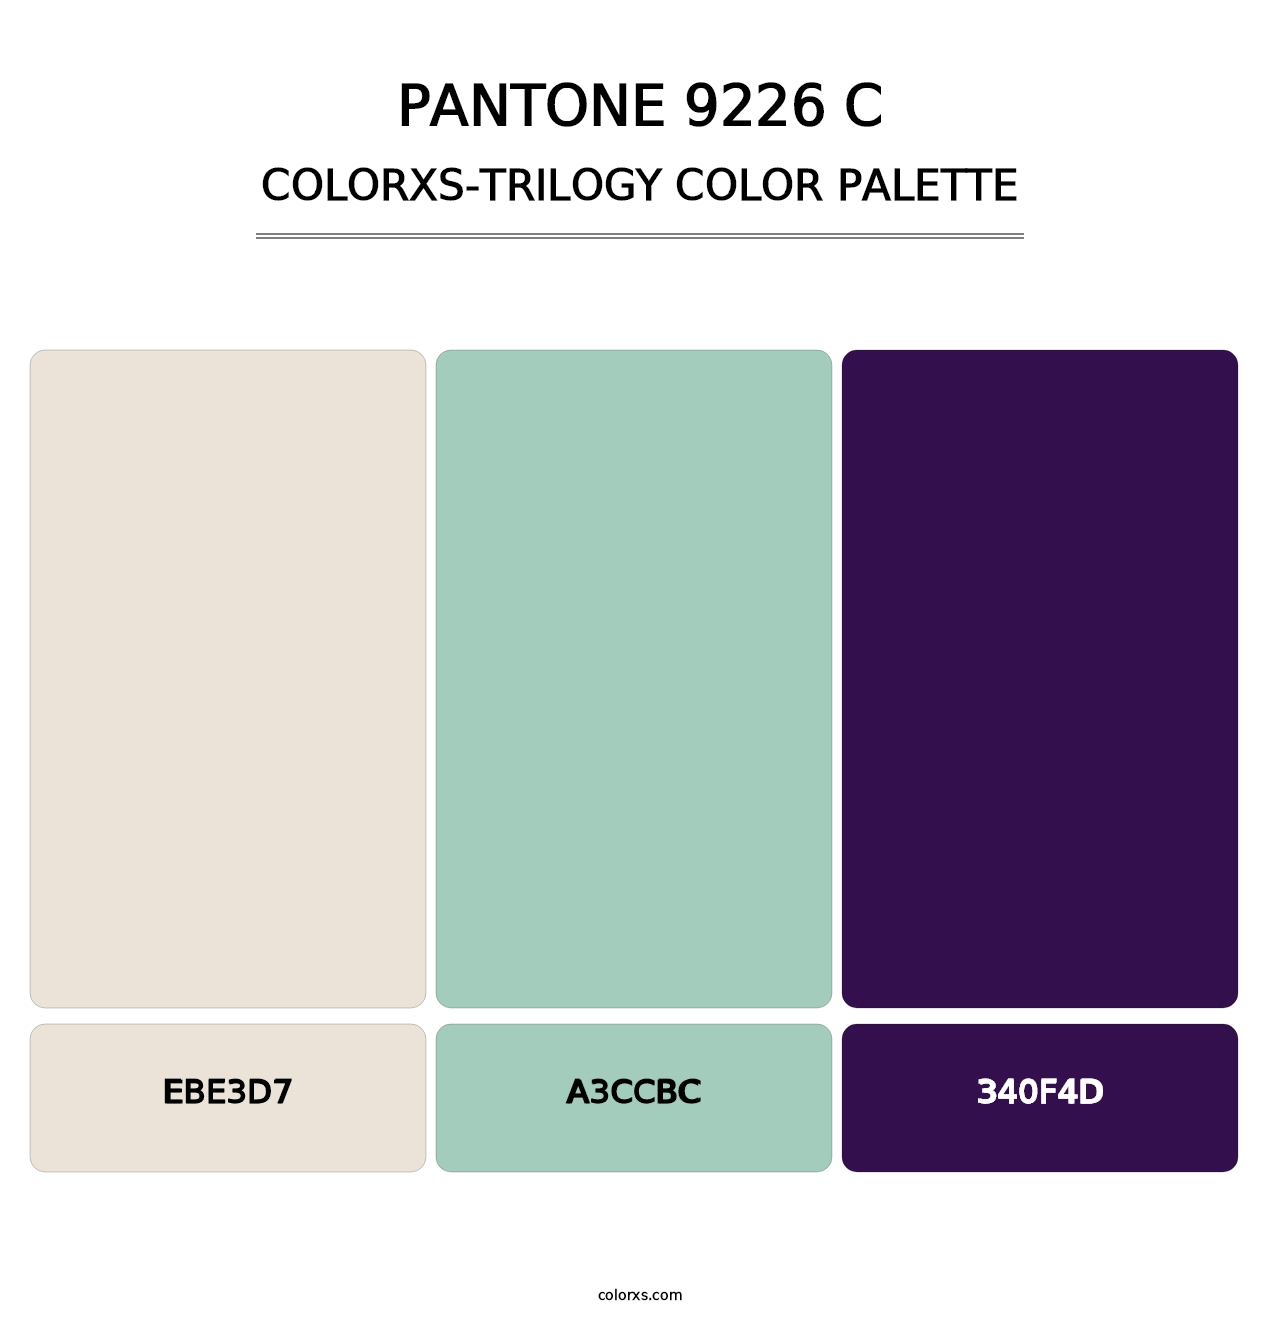 PANTONE 9226 C - Colorxs Trilogy Palette